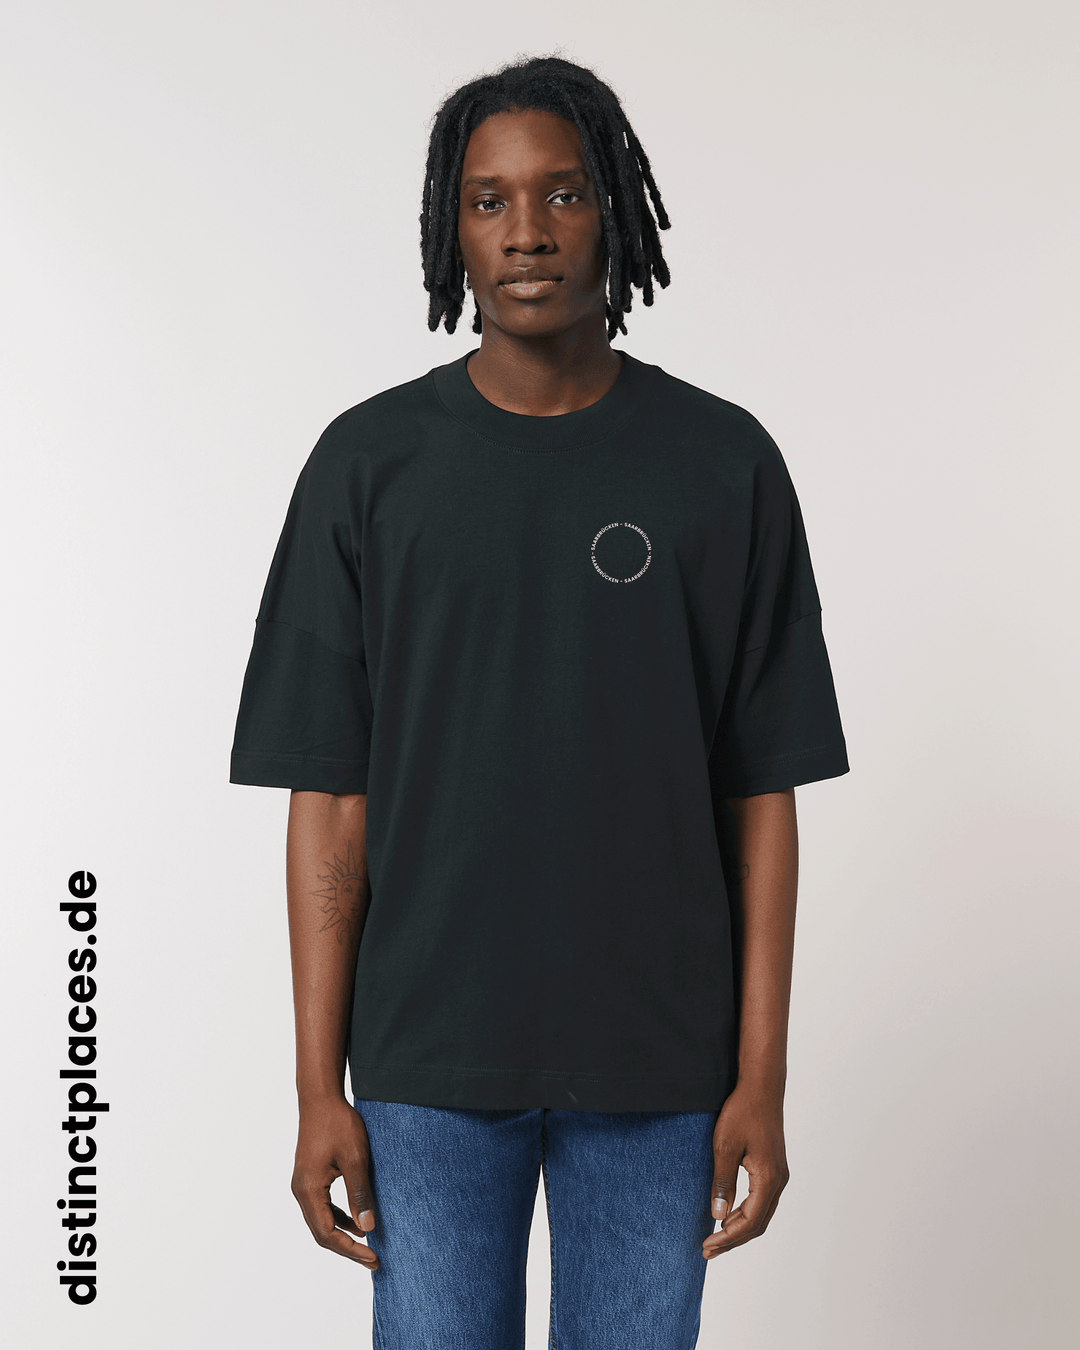 Mann von vorne trägt schwarzes fairtrade, vegan und bio-baumwoll T-Shirt mit einem minimalistischem weißen Logo, beziehungsweise Schriftzug für Saarbrücken